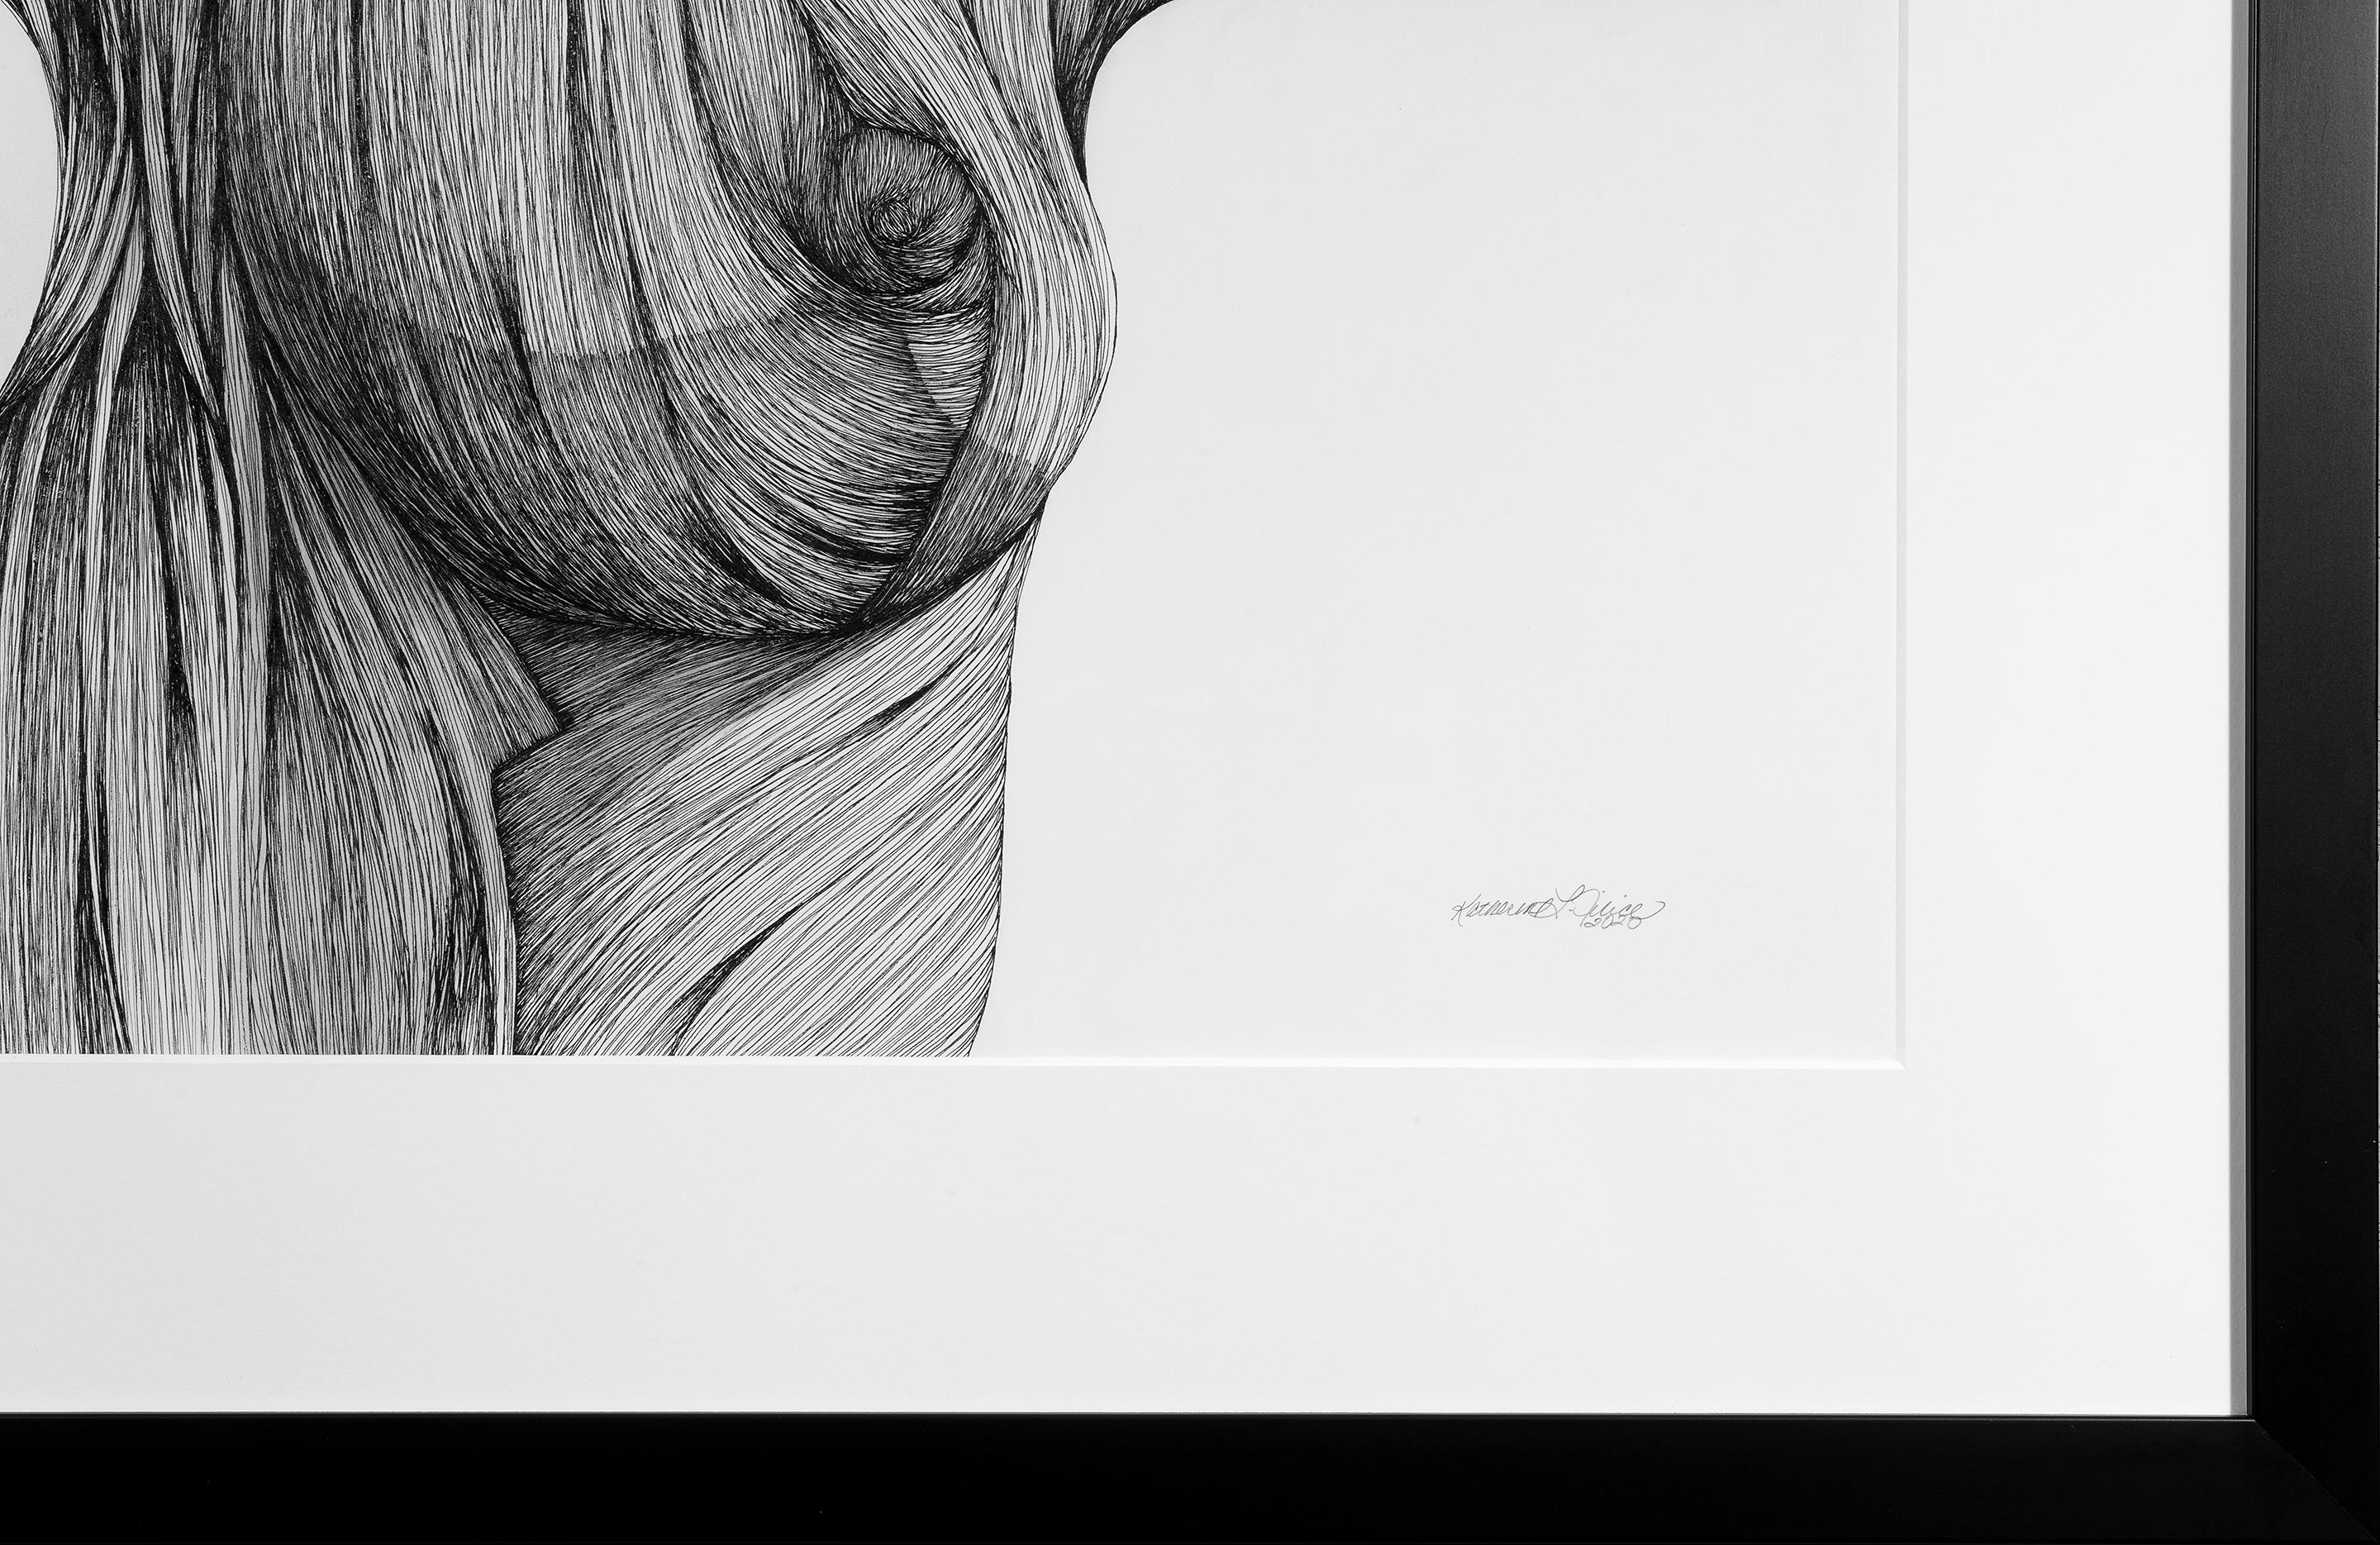 Ether - Stift, Tinte, Schwarz-Weiß-Zeichnung einer weiblichen Figur (Zeitgenössisch), Art, von Katherine Filice